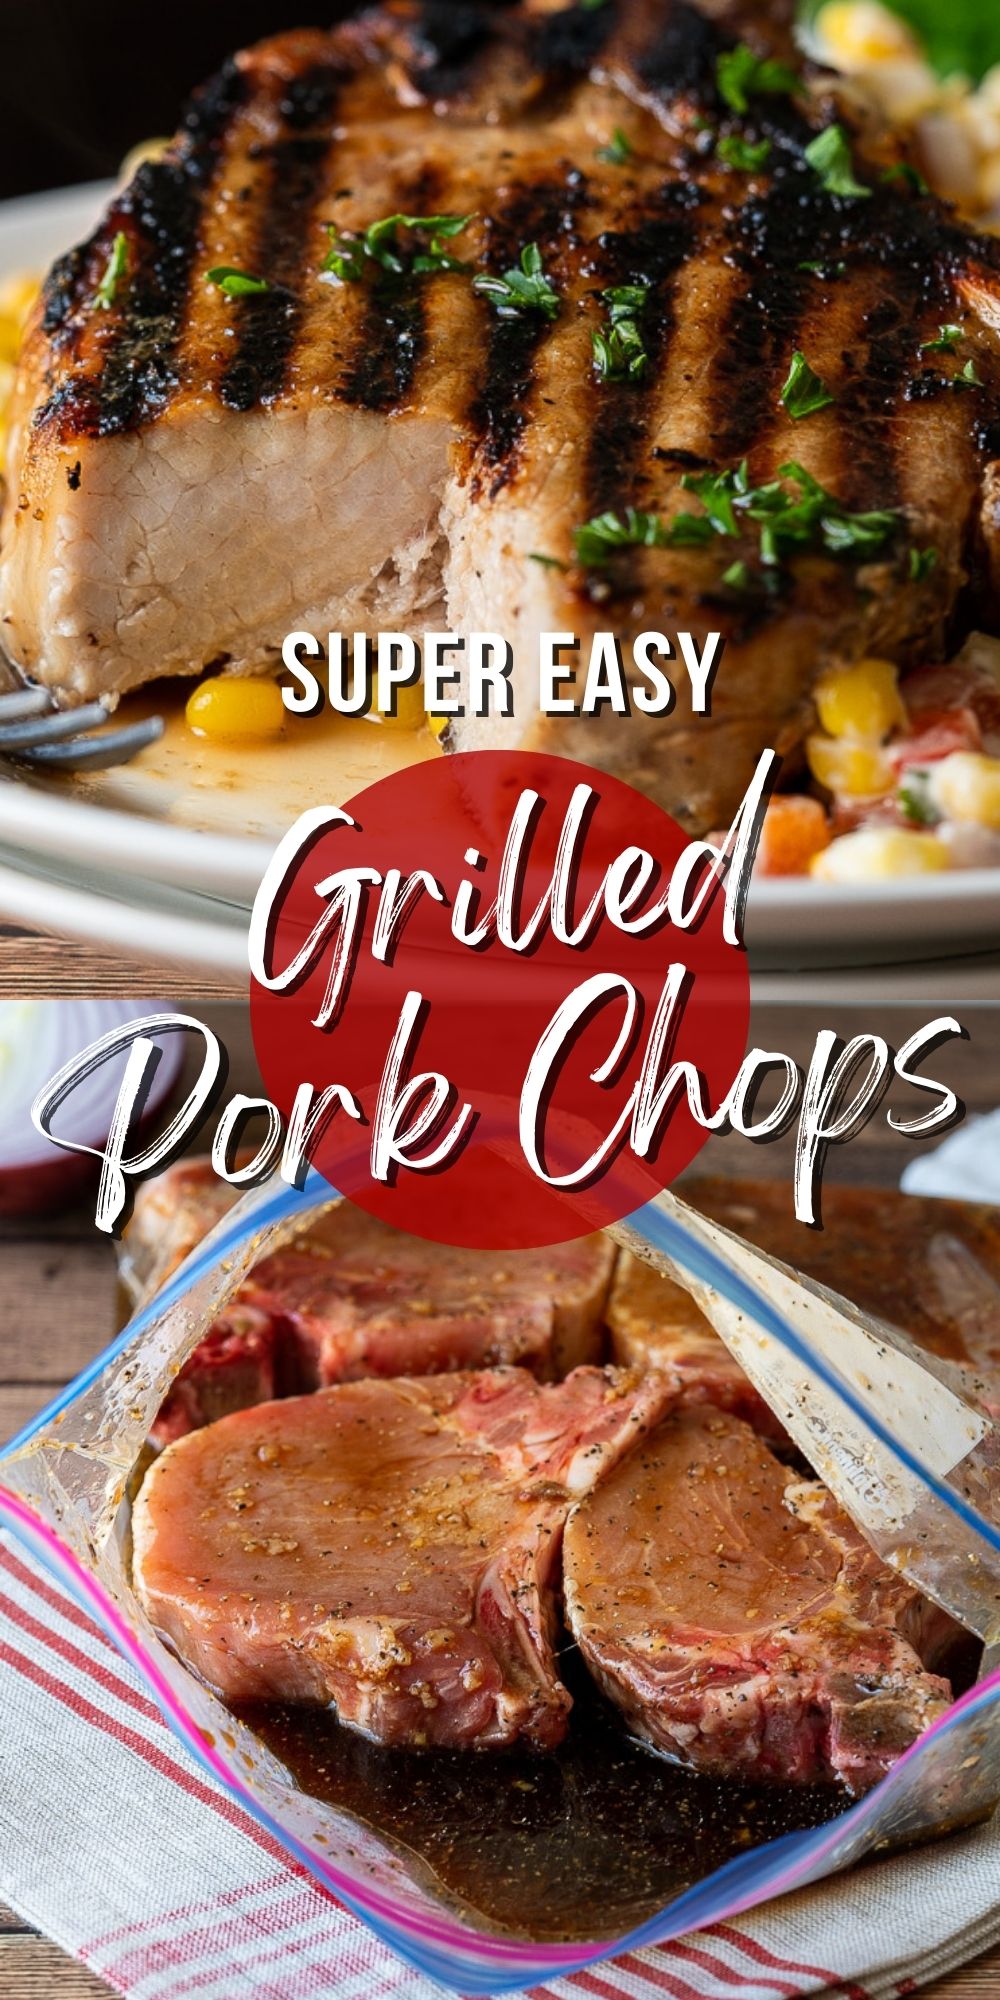 Million Dollar Grilled Pork Chop Recipe - I Wash You Dry